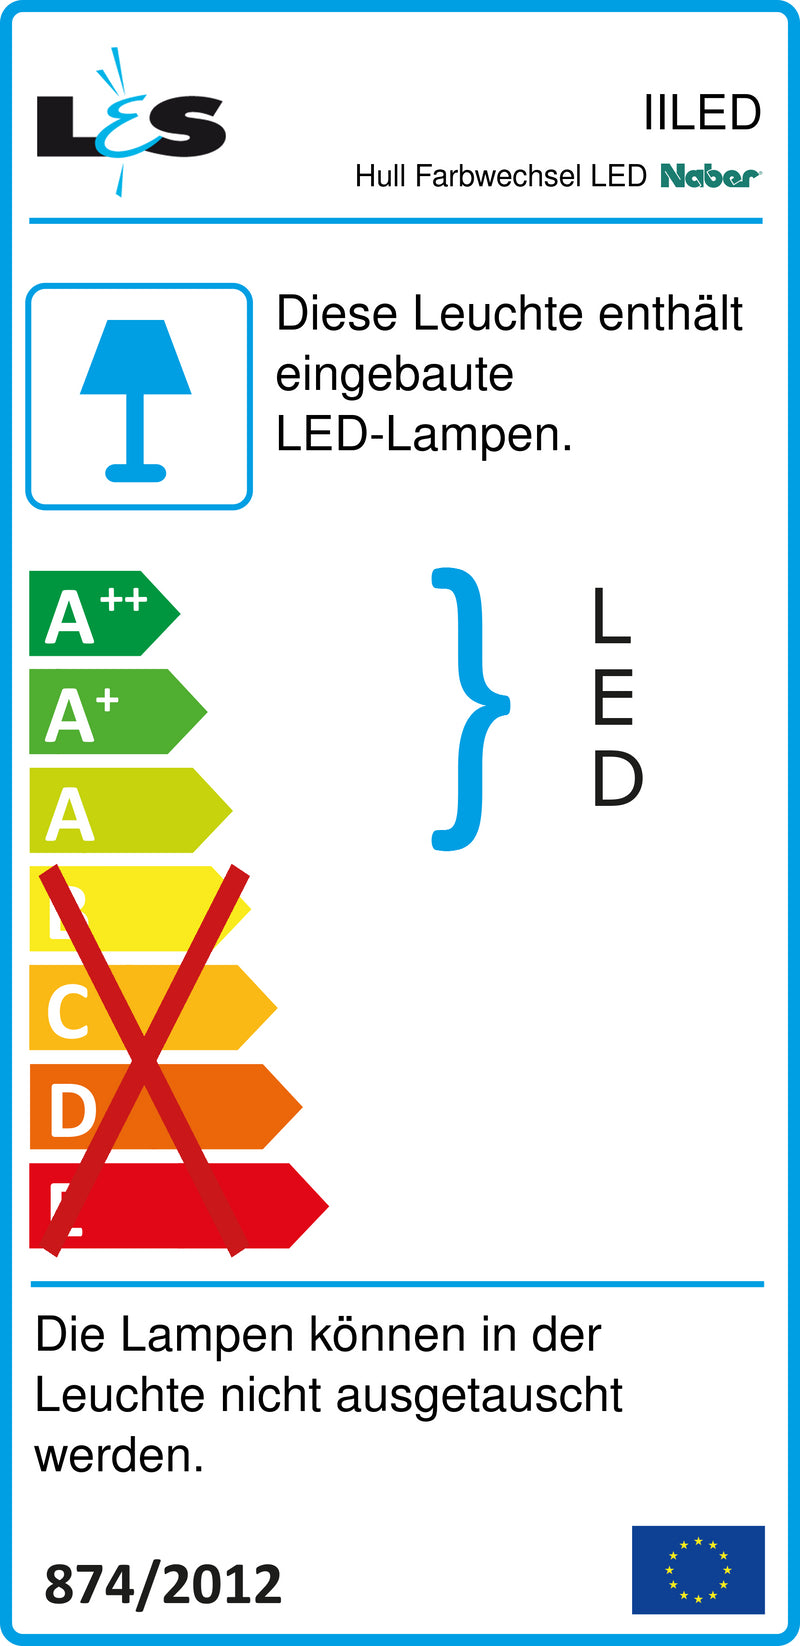 E-Label zu Zeichnung zu Hull Farbwechsel LED als Variante Einzelleuchte ohne Schalter, LIC LED-System kompatibel, edelstahlfarbig von Naber GmbH in der Kategorie Lichttechnik in Österreich auf conceptshop.at